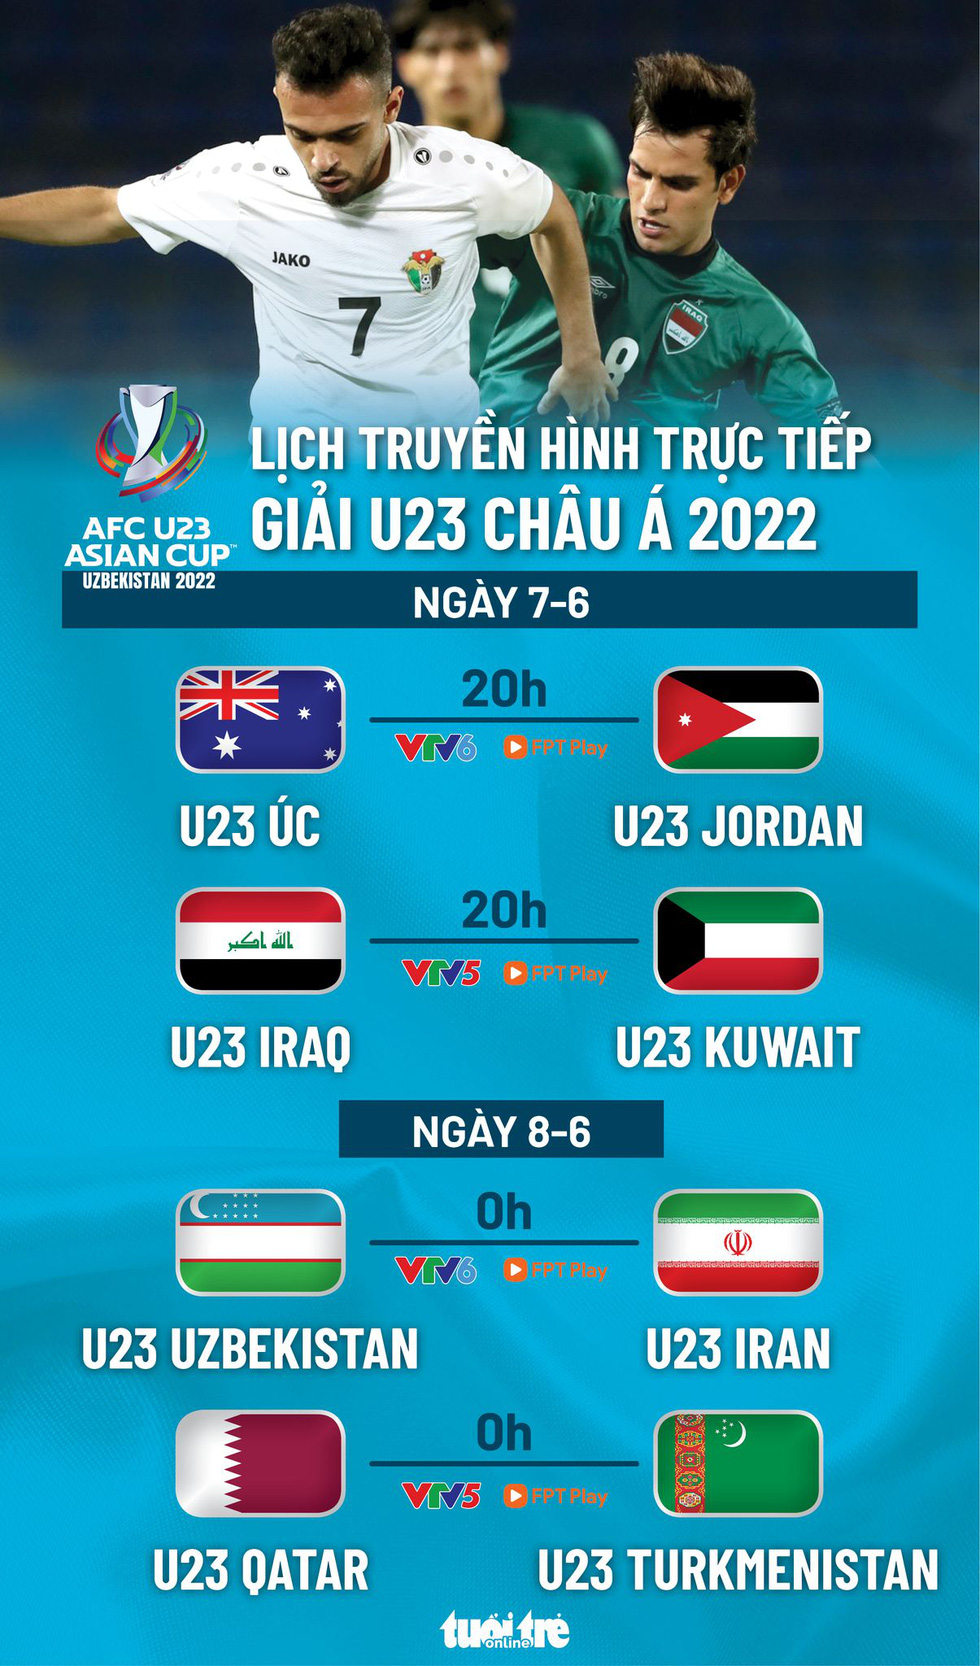 Lịch trực tiếp Giải U23 châu Á: Lượt cuối ở các bảng A, B - Ảnh 1.